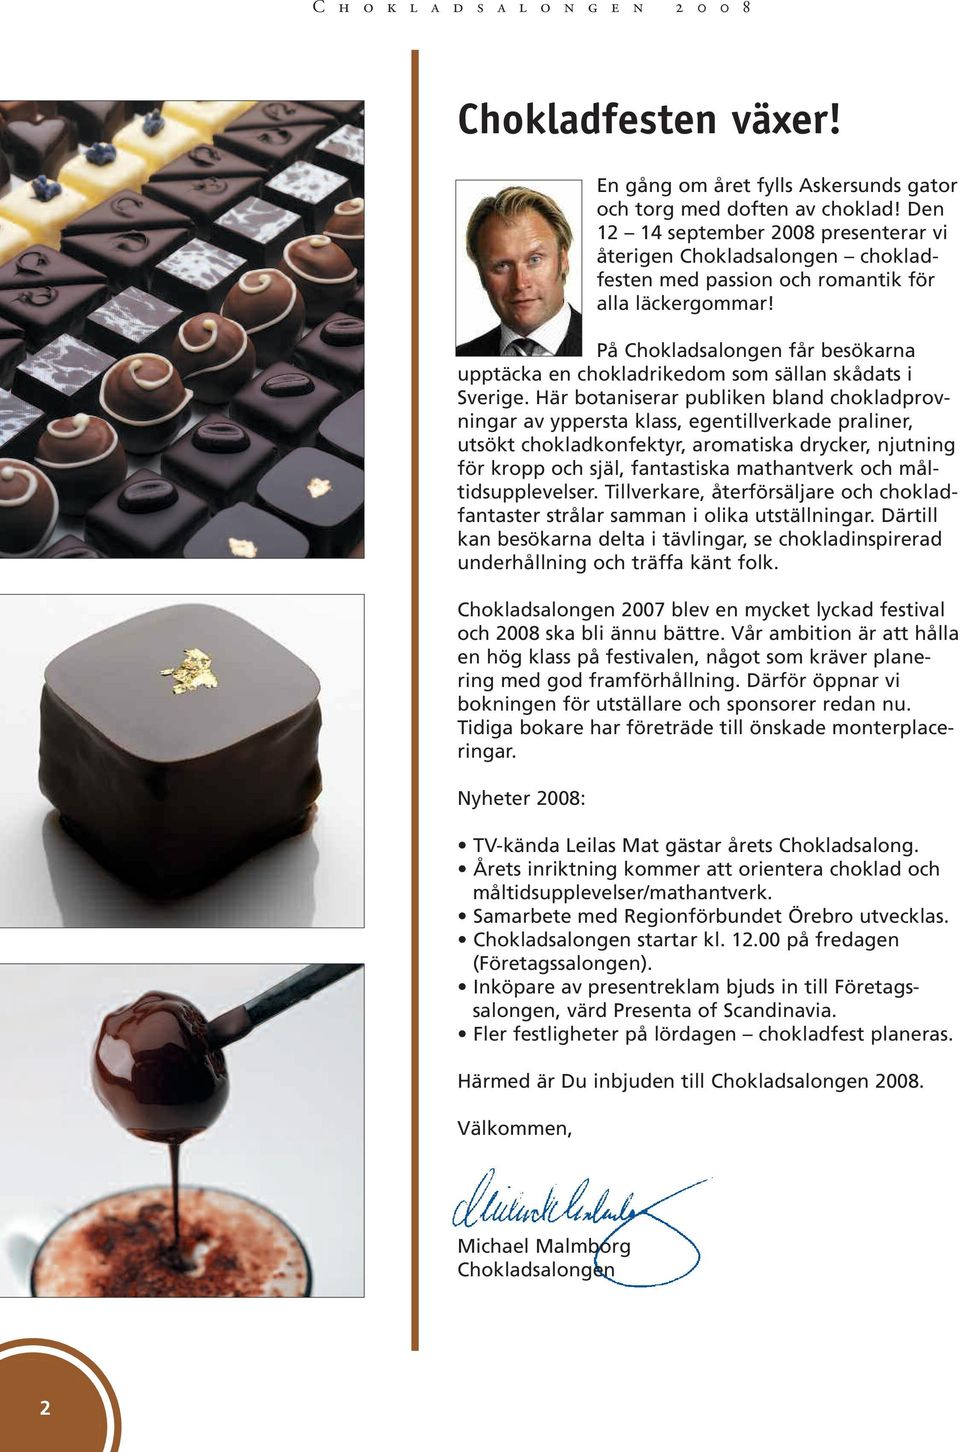 På Chokladsalongen får besökarna upptäcka en chokladrikedom som sällan skådats i Sverige.